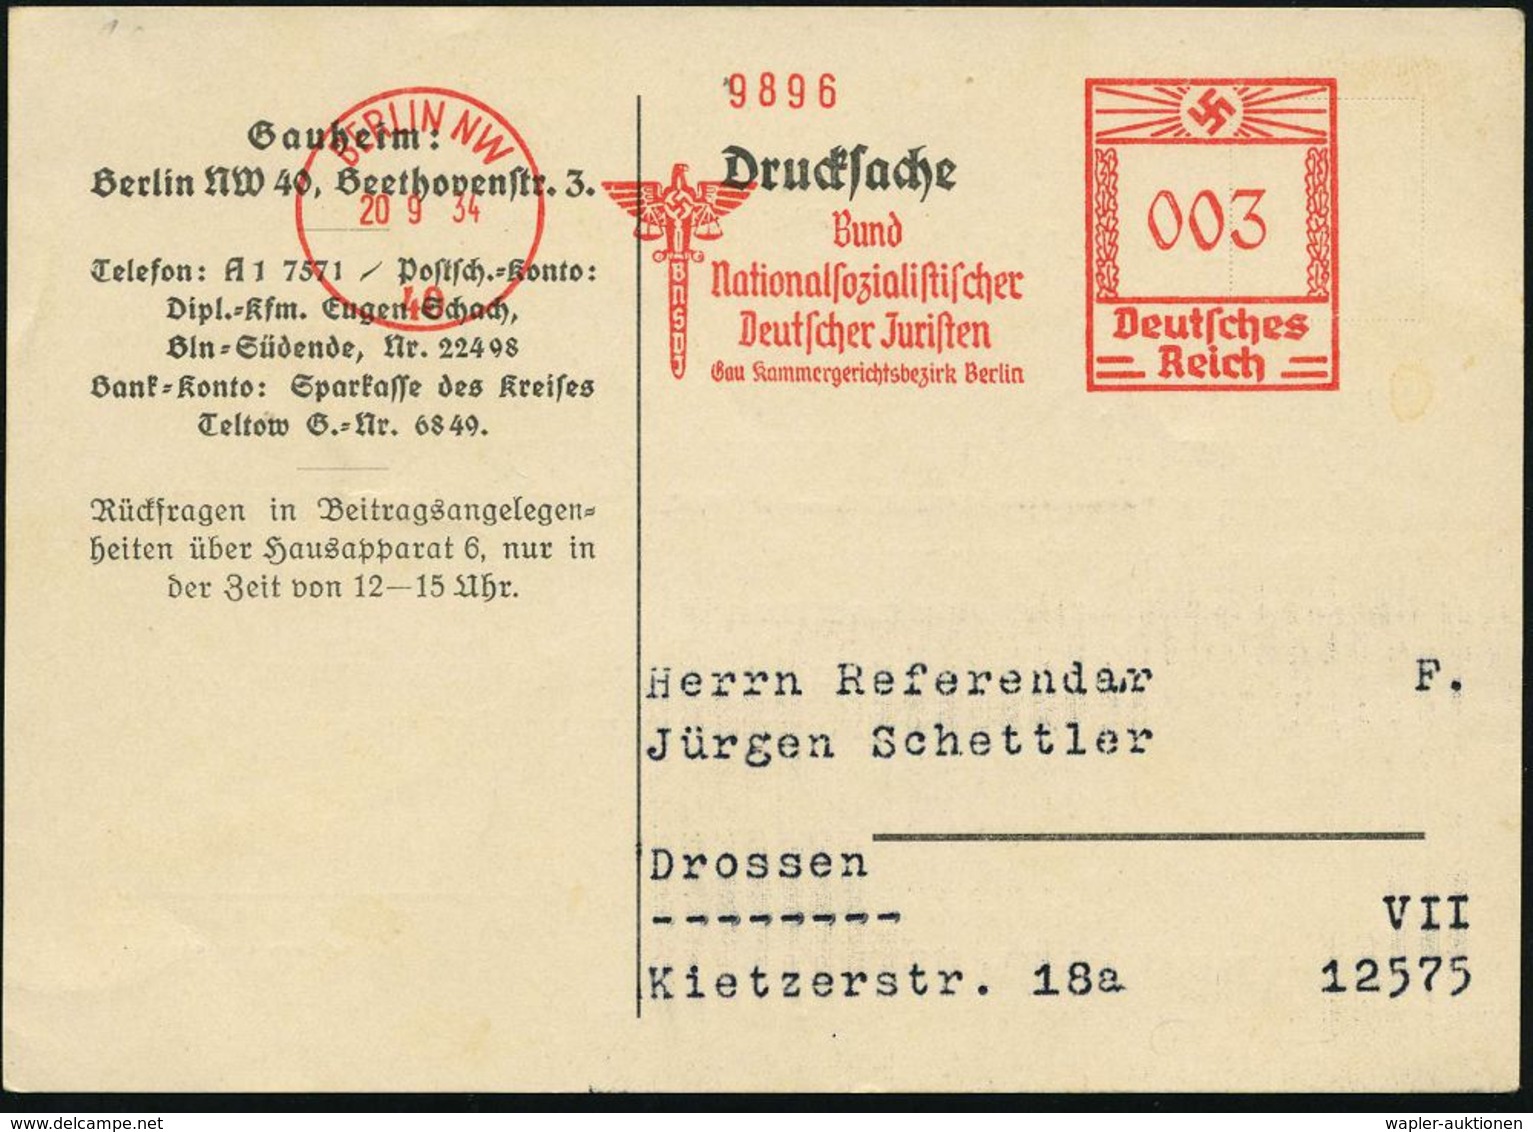 JUSTIZ / STRAFVOLLZUG / GEFÄNGNIS : BERLIN NW/ 40/ BNSDJ/ Bund/ Nationalsozialistischer/ Deutscher Juristen.. 1934 (20.9 - Polizia – Gendarmeria